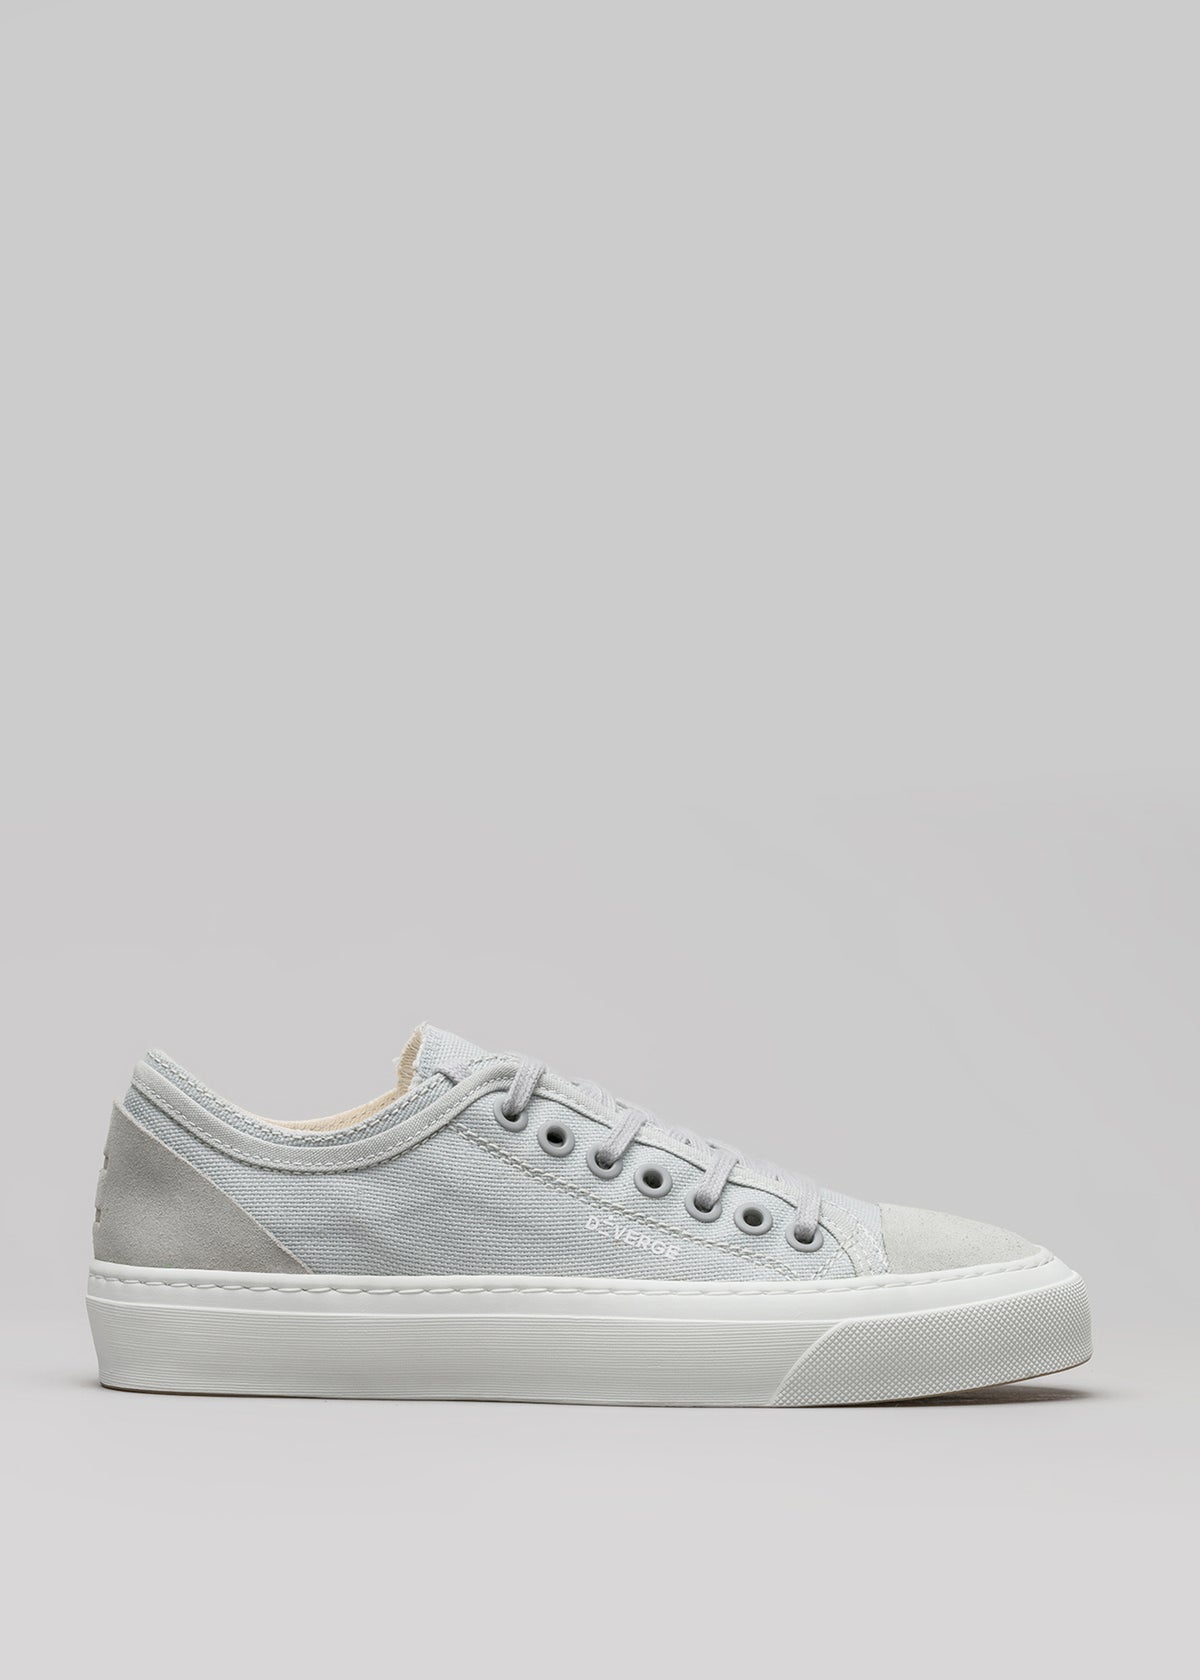 Una singola sneaker low top V3 Full Color Grey con lacci bianchi e suola in gomma bianca, su uno sfondo grigio.